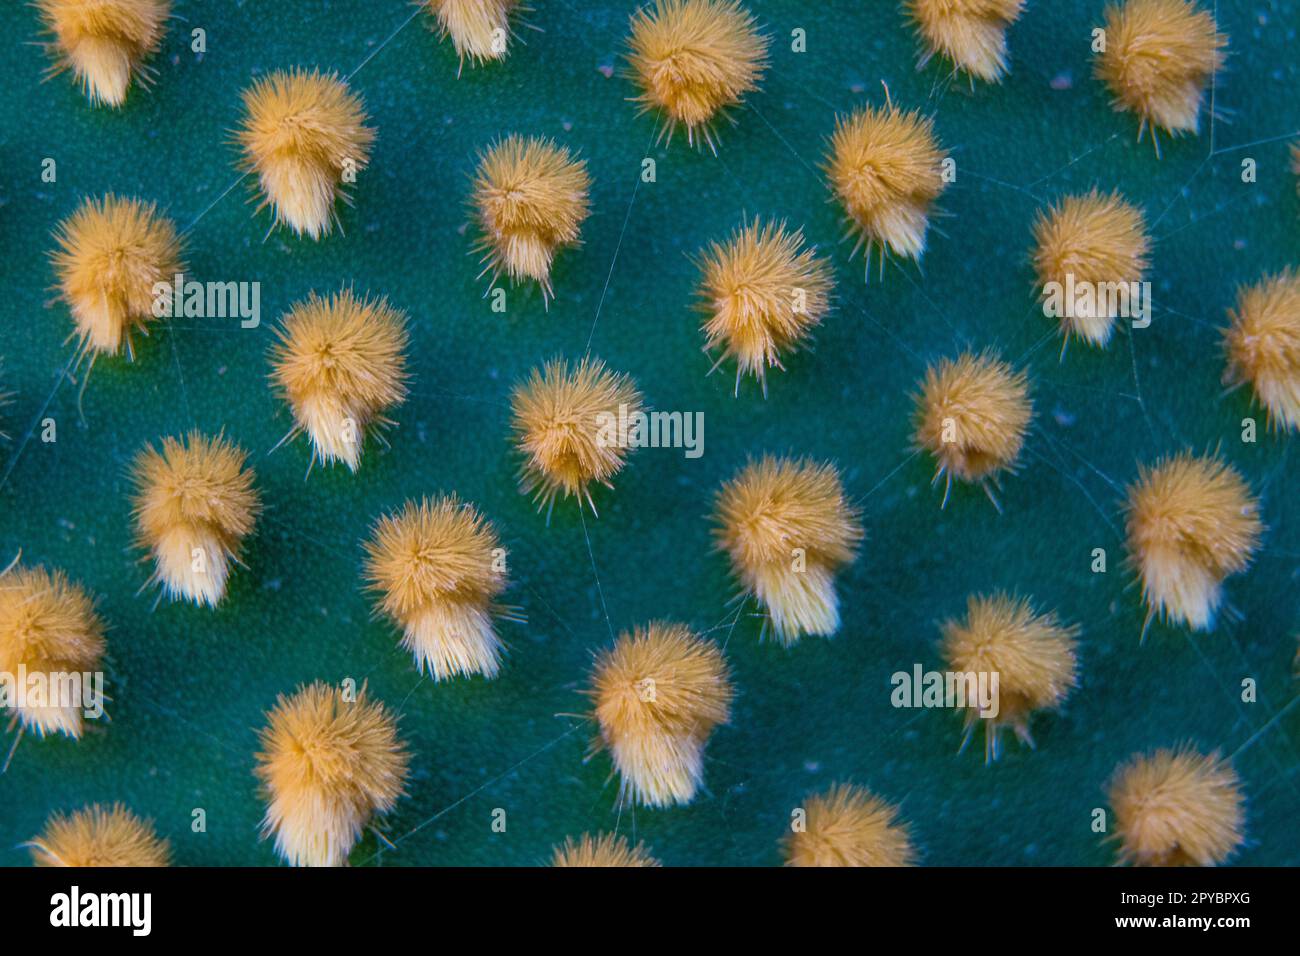 Primo piano e macro shot di ereole del cactus di Optunia con spine e glochidi di aereole che creano un motivo su sfondo verde Foto Stock